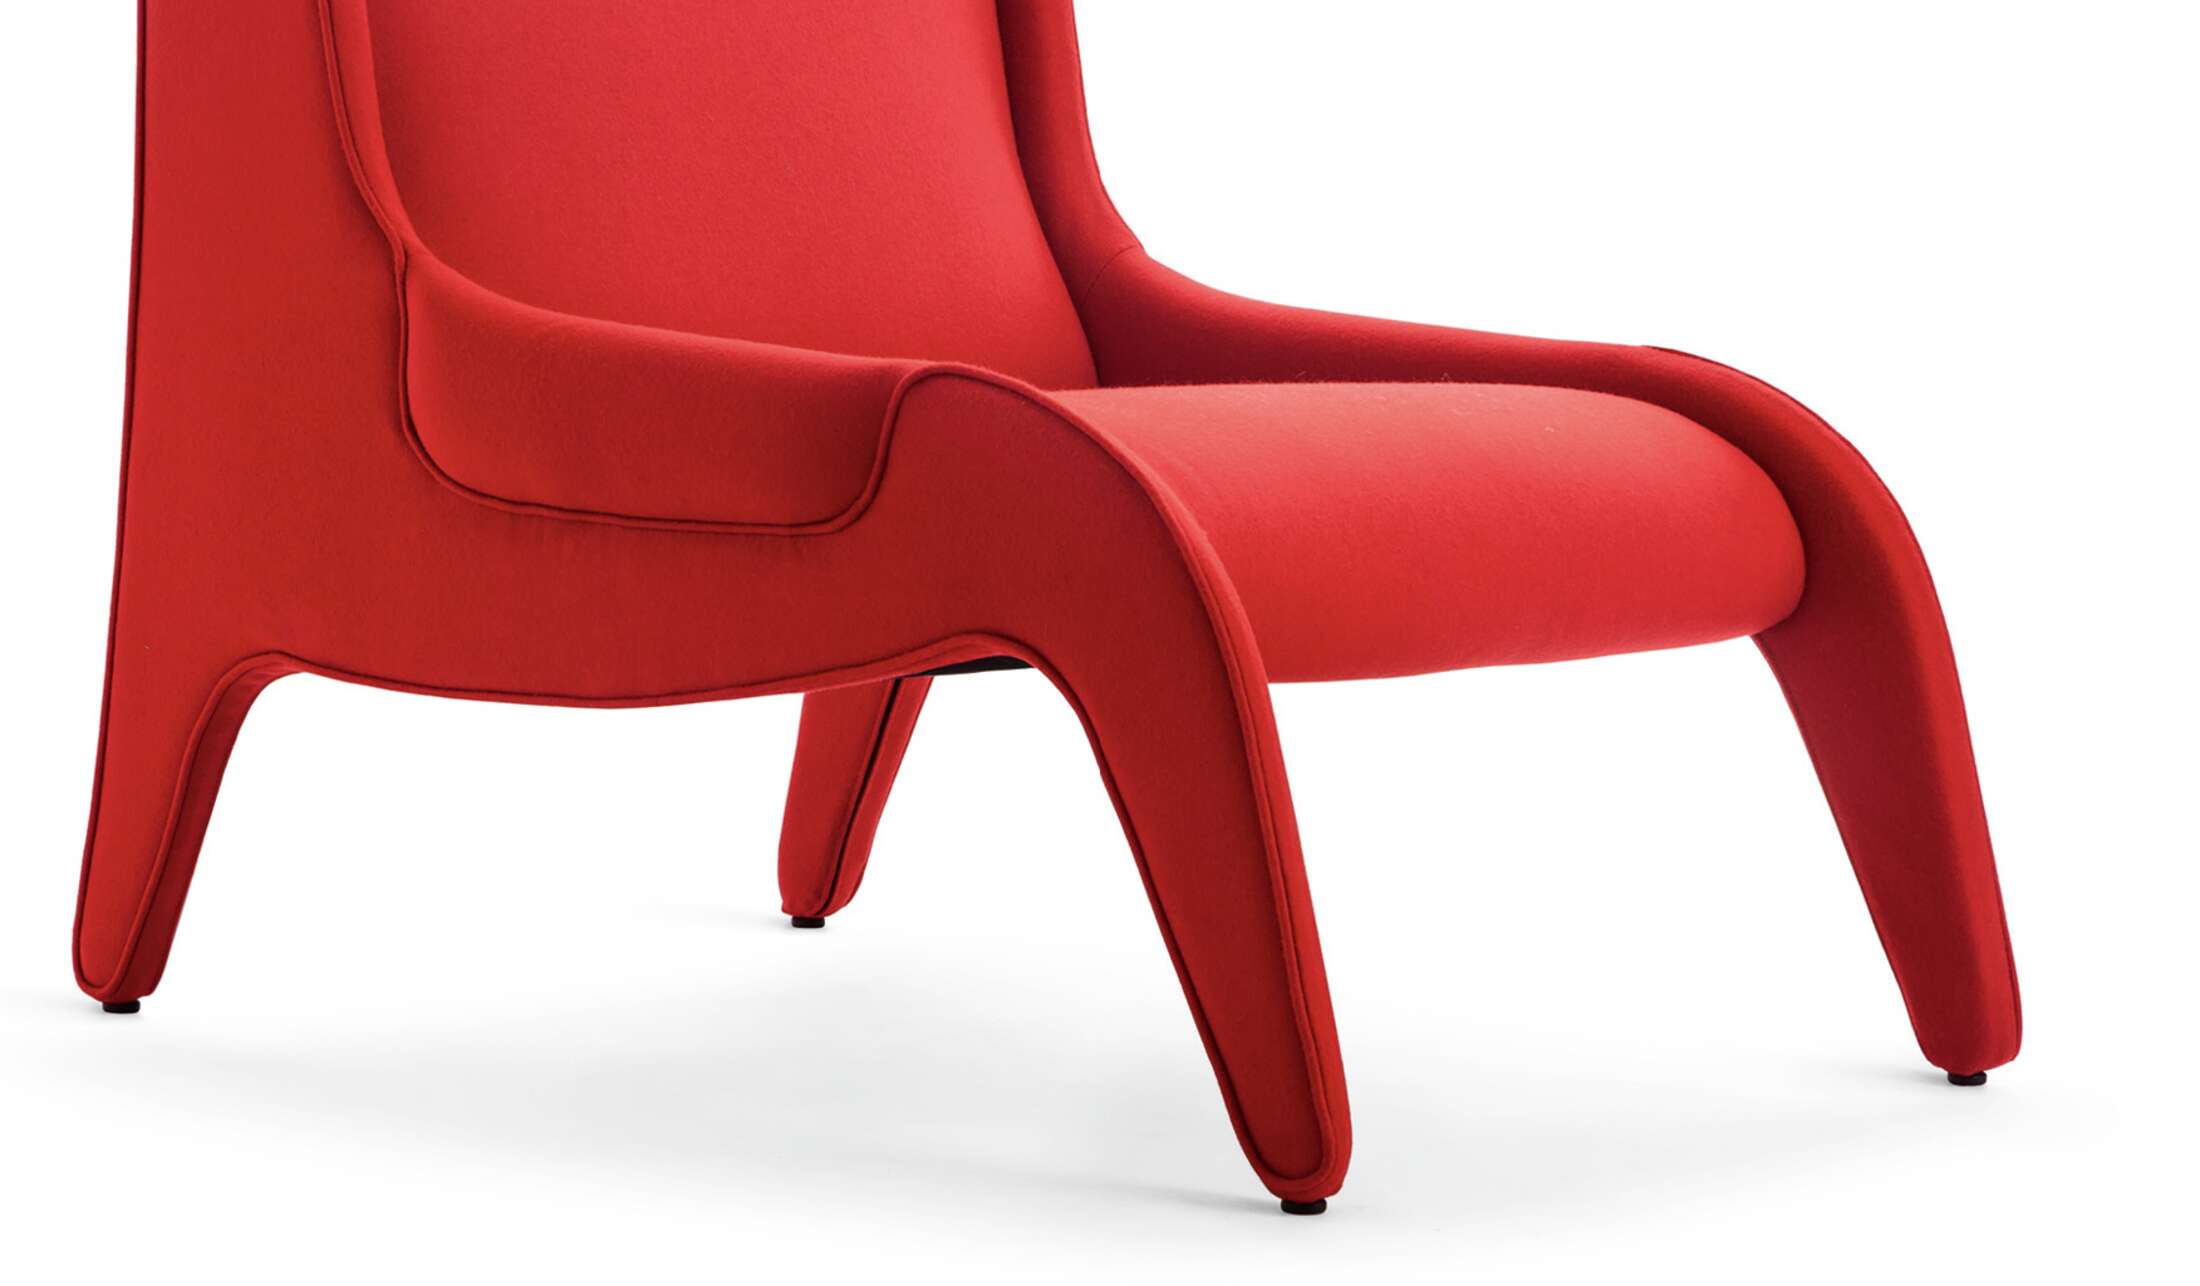 1949 von Marco Zanuso entworfener Sessel, der 2015 neu aufgelegt wurde. Hergestellt von Cassina in Italien. Der angegebene Preis gilt für den Stuhl, wie auf dem ersten Bild gezeigt. Bitte fragen Sie nach Preisen für andere MATERIALS und Farben.